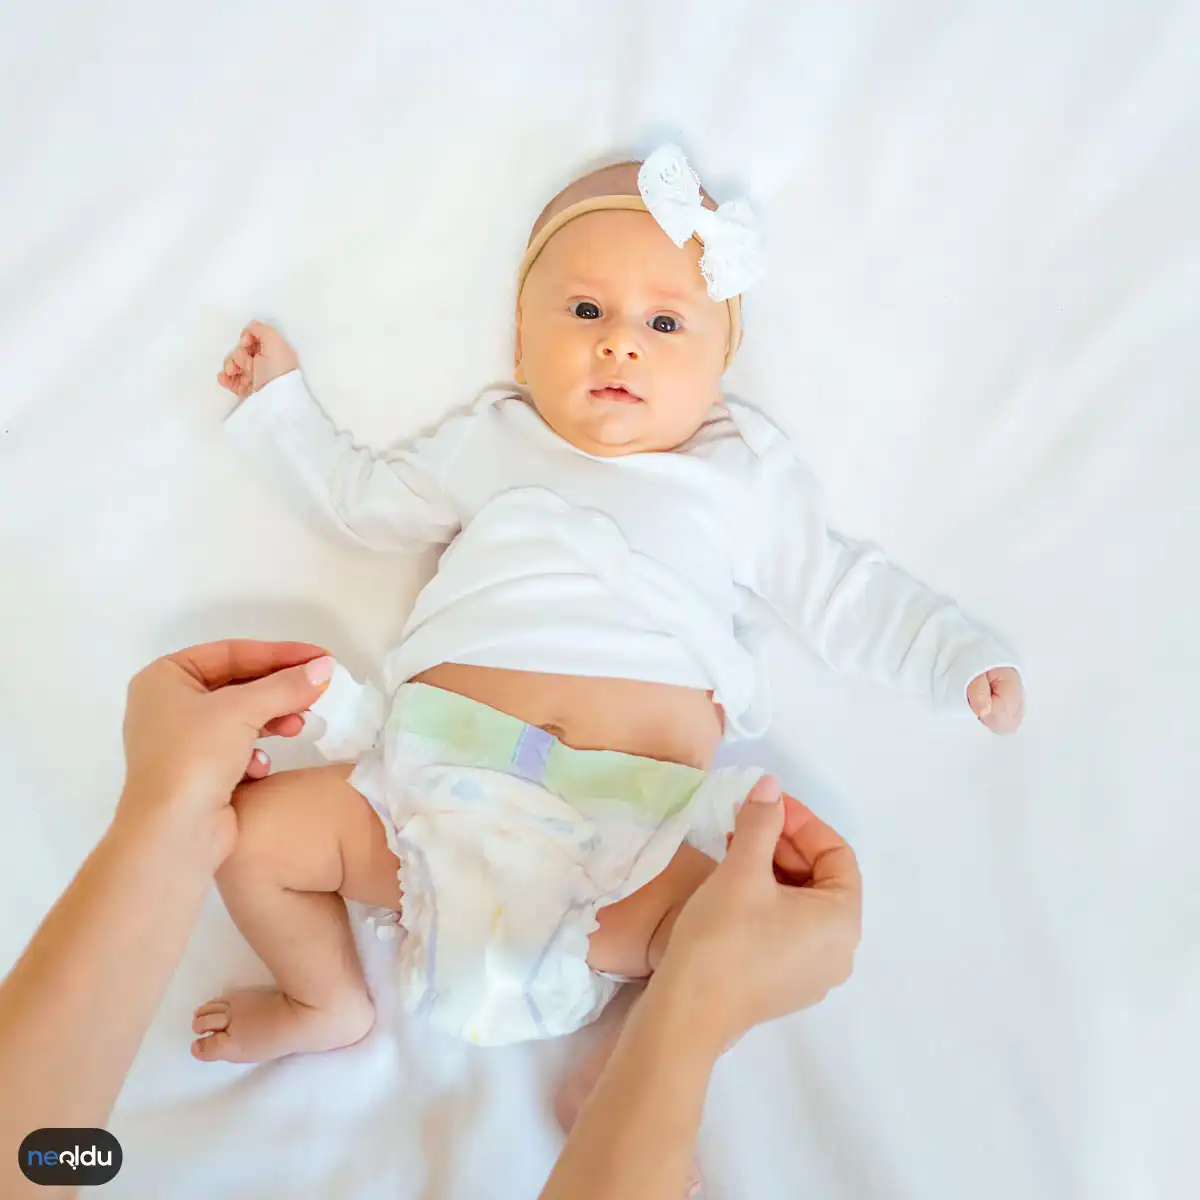 Bebekte Gaz Neden Olur? Nasıl Çıkartılır?